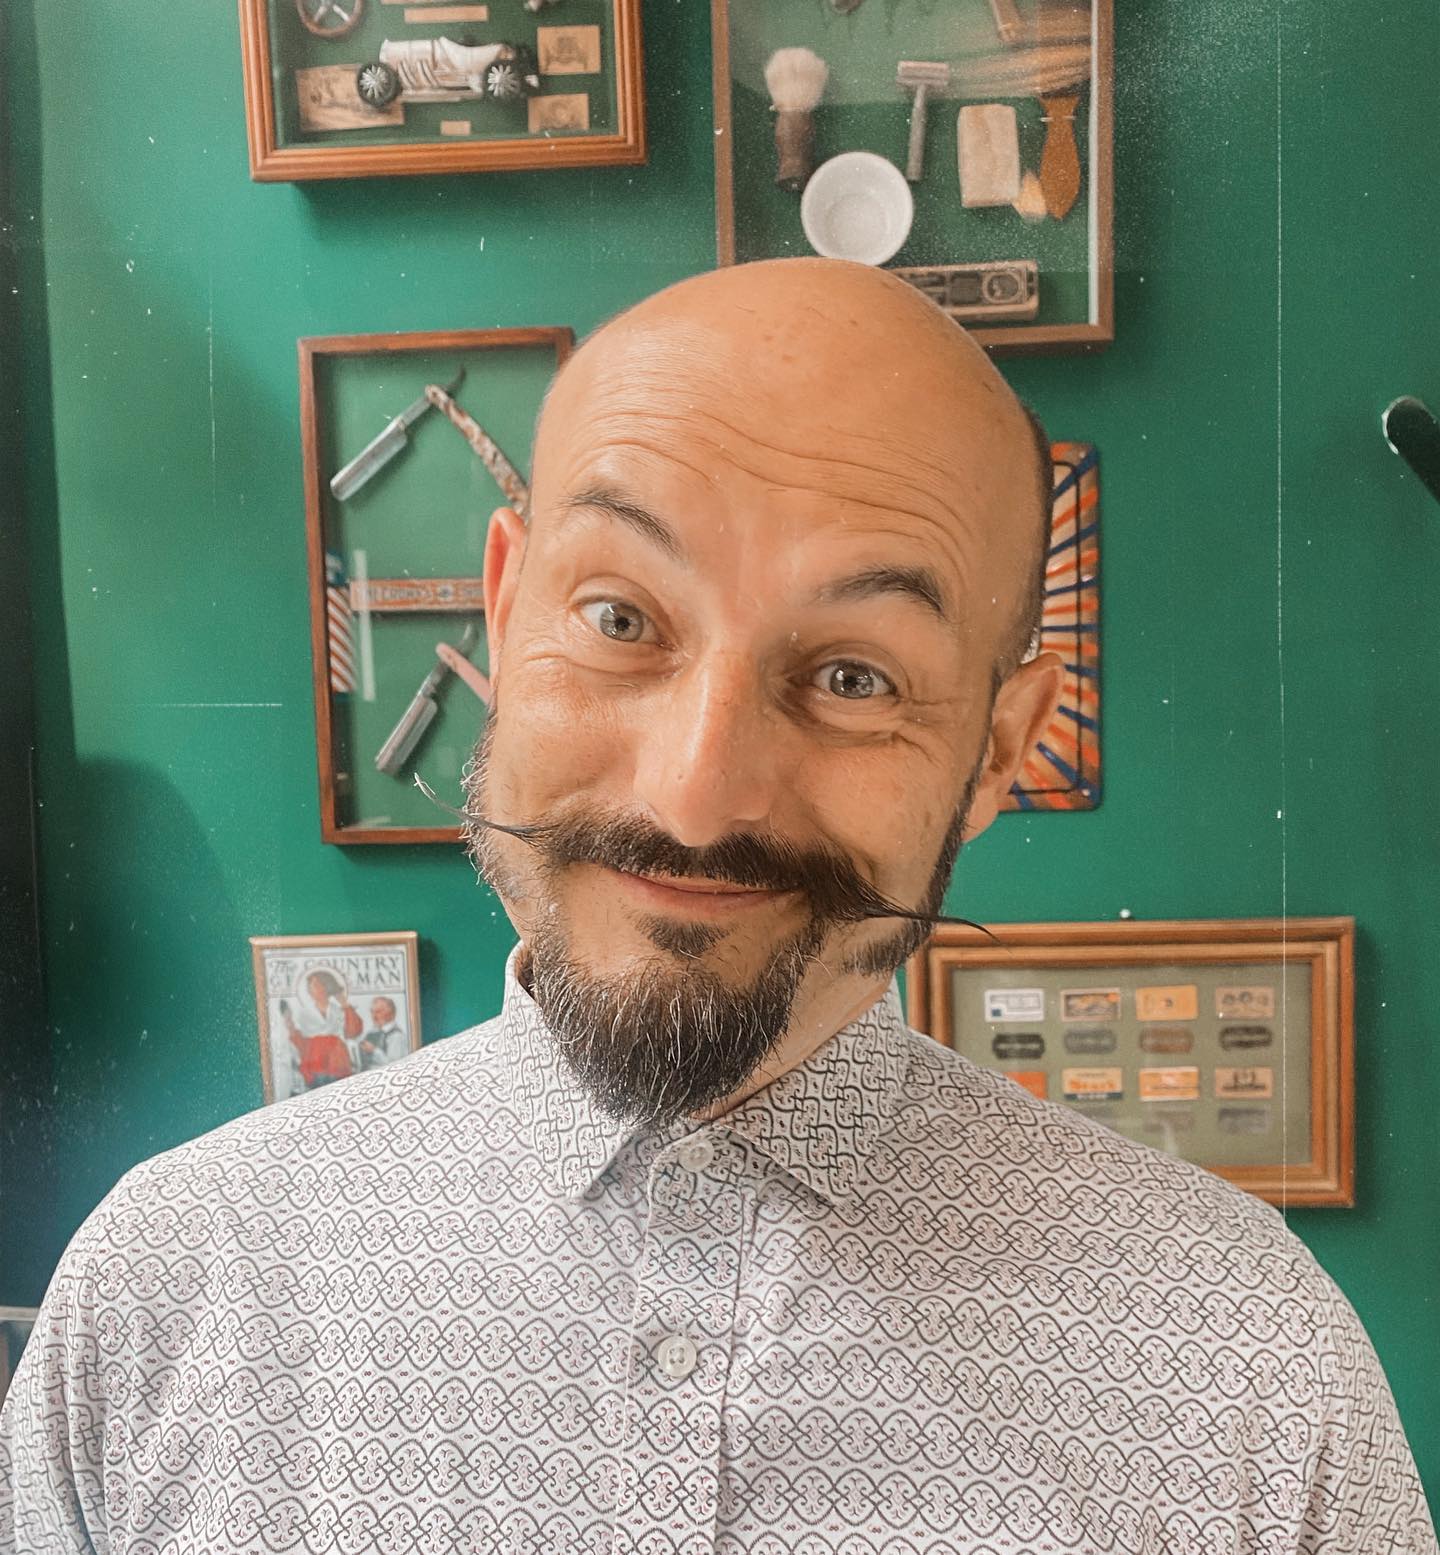 Moustache - L'atelier de la barbière